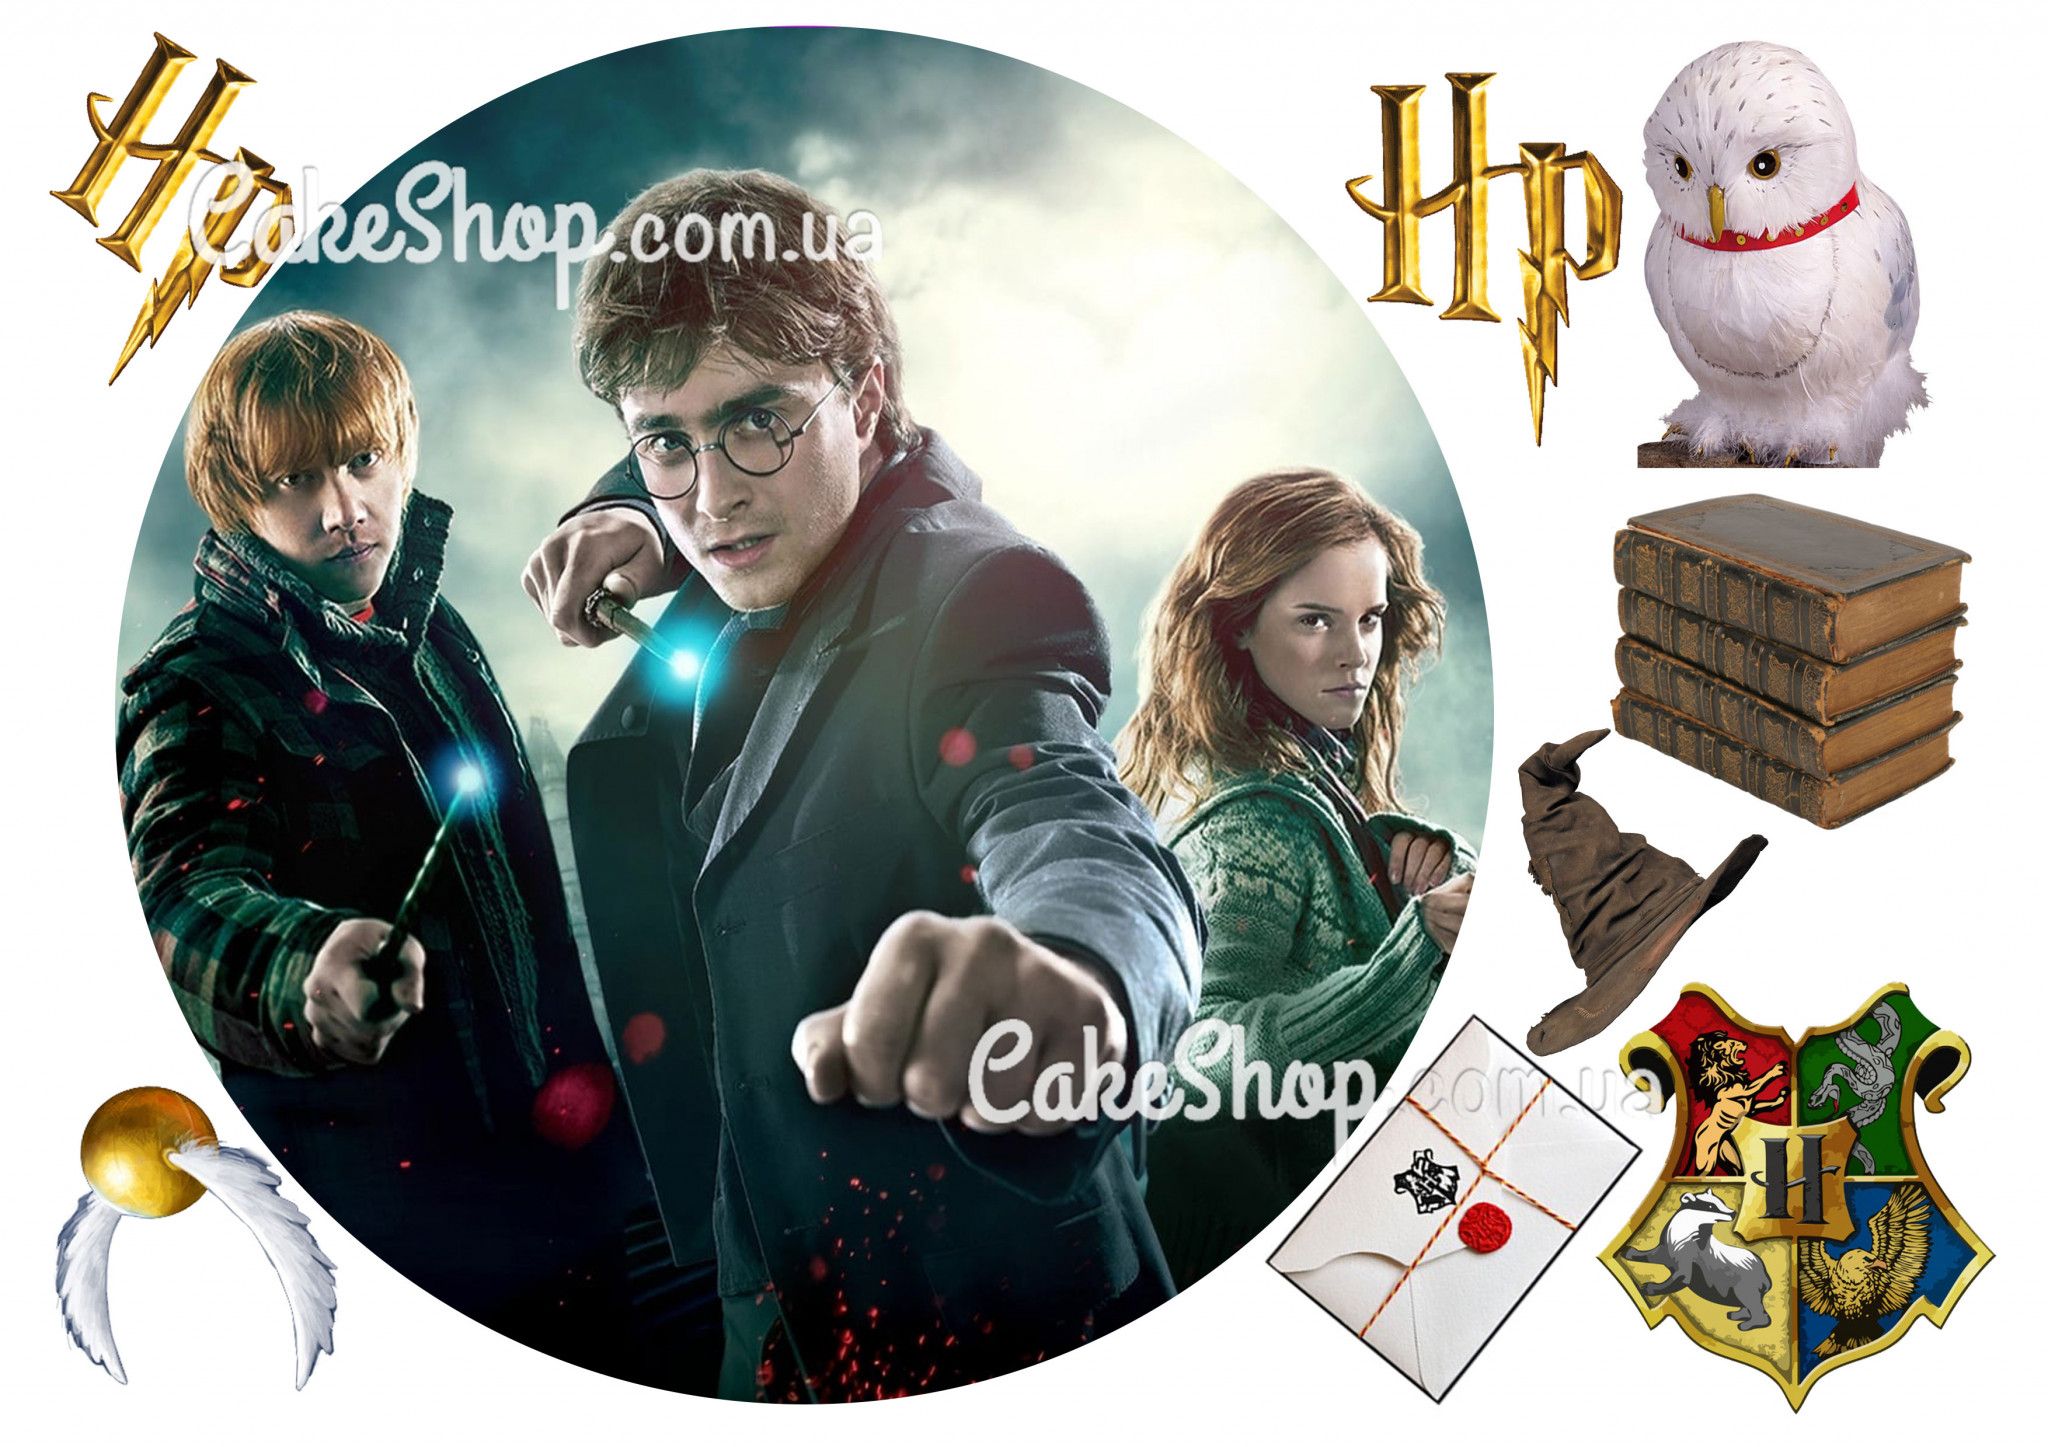 ⋗ Сахарная картинка Гарри Поттер 1 купить в Украине ➛ CakeShop.com.ua, фото